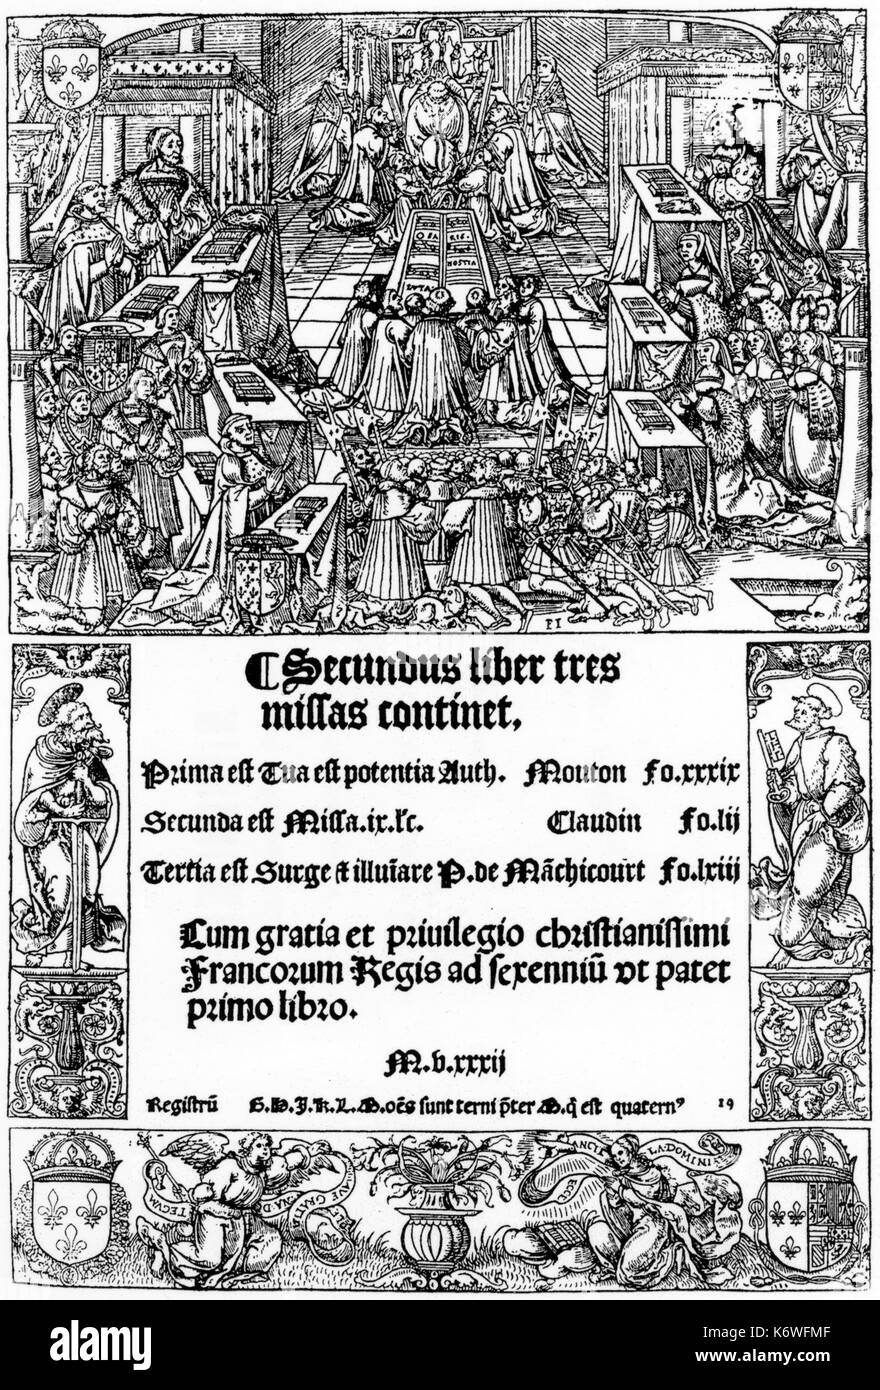 Pierre ATTAIGNANT - 2° libro di masse, 1532. Titlepage. Mostra la Messa che si celebra nella chiesa. Coro di canto dei monaci. Congregazione del canto. contiene opere di Mouton, MACHICOURT, CLAUDIN de SERMISY Foto Stock